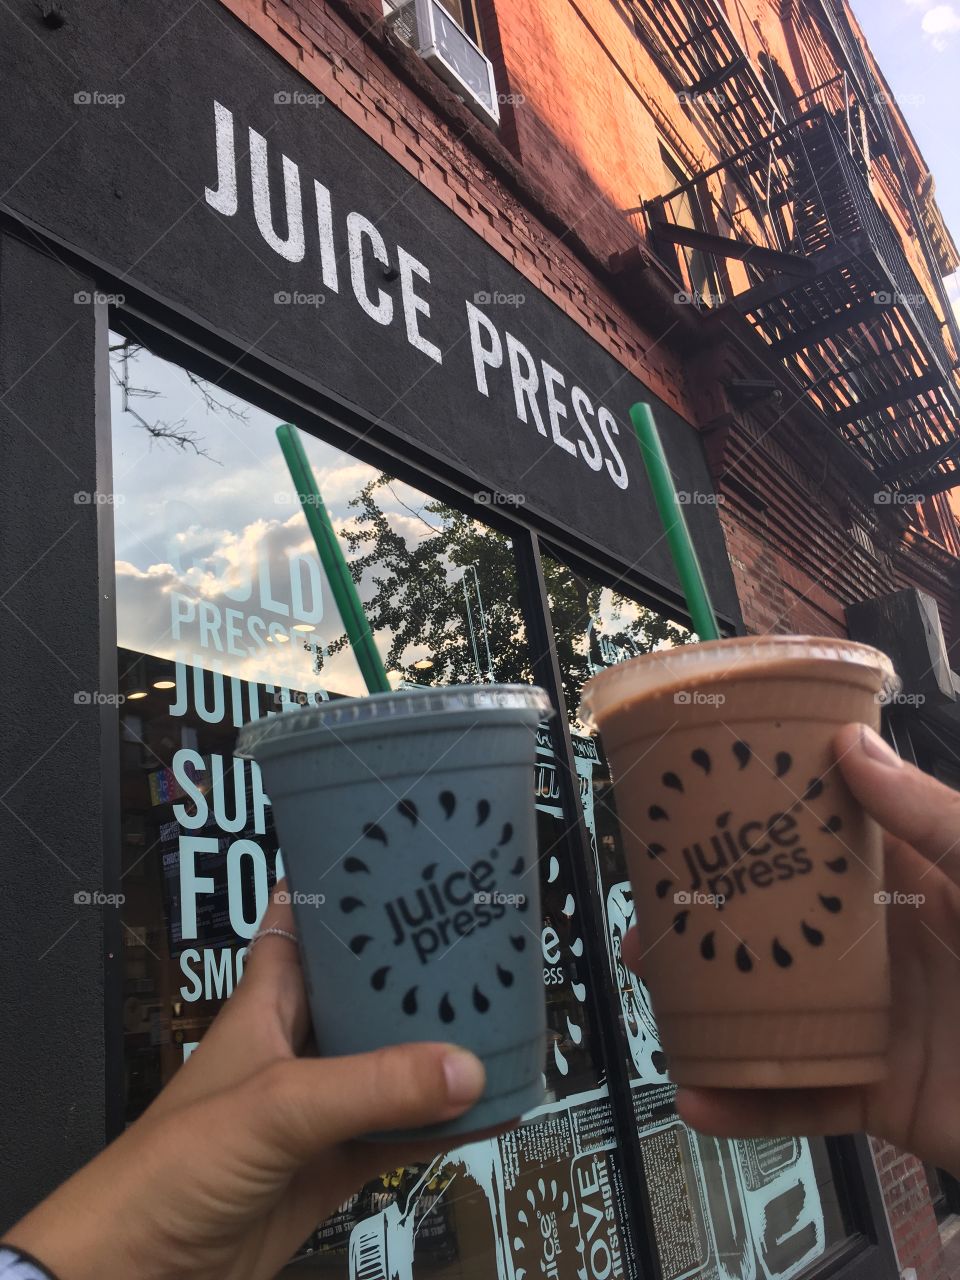 Juice Press, Brooklyn NY 